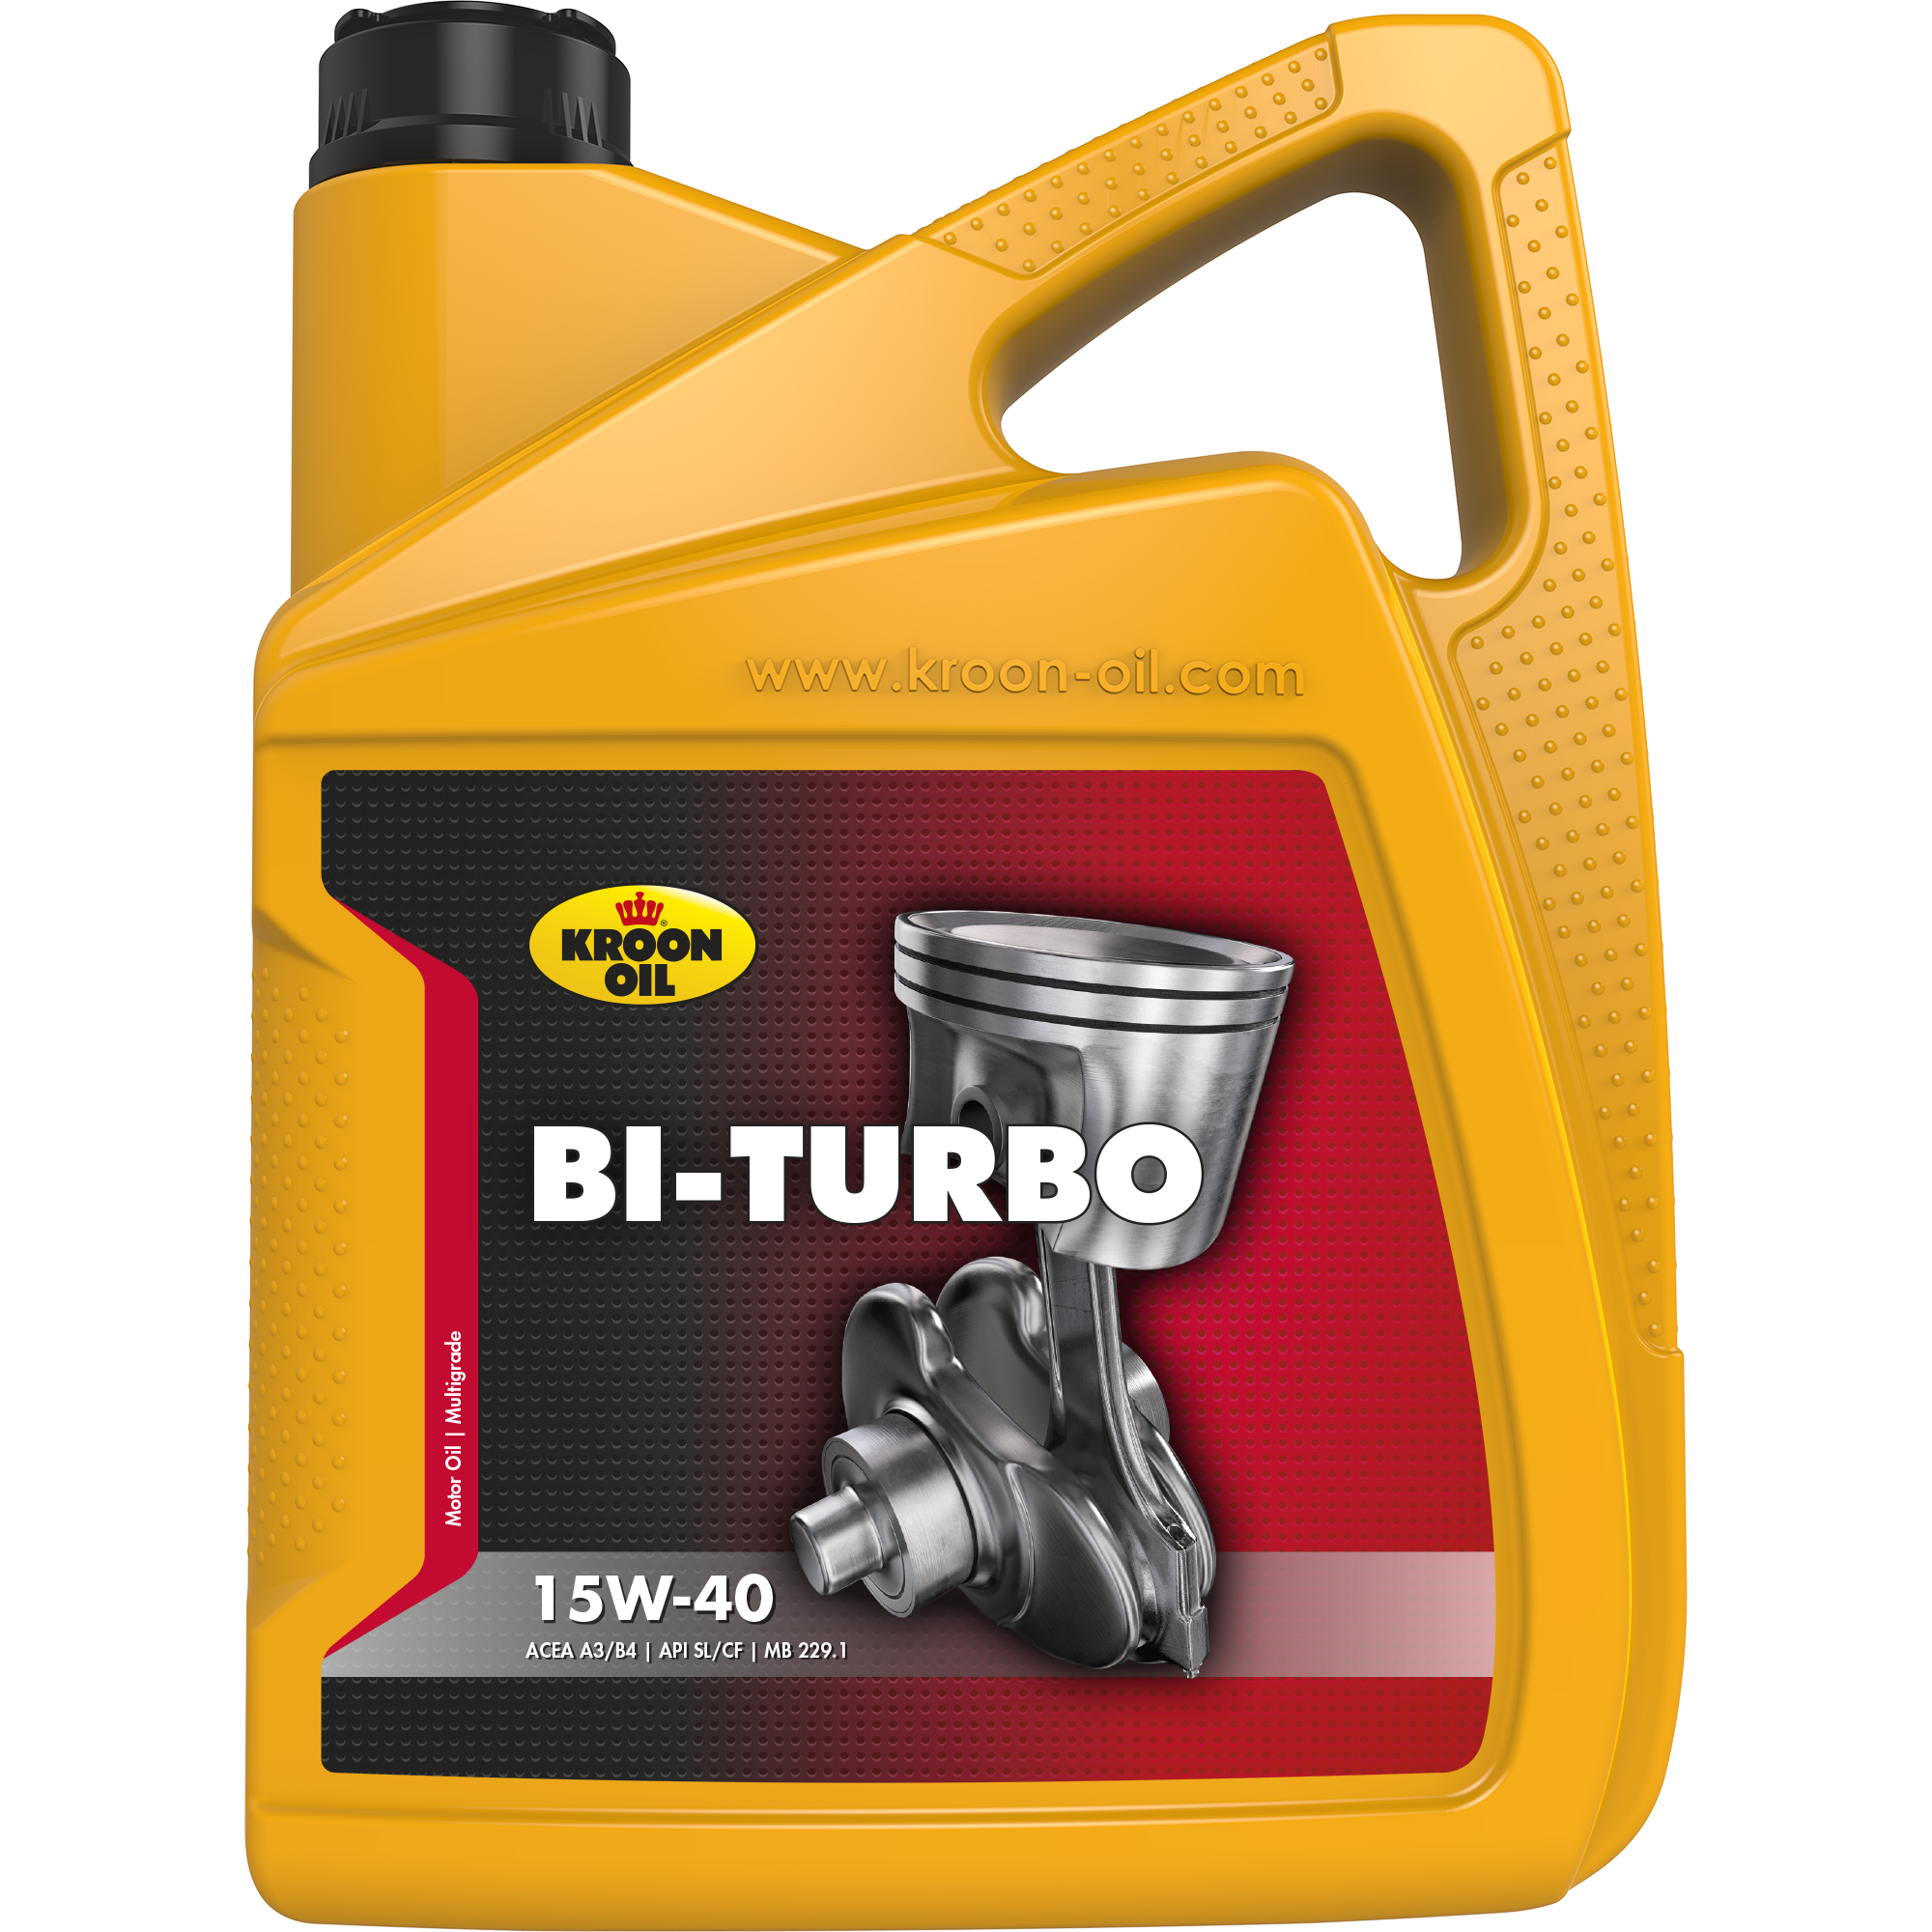 00328-5 Bi-Turbo 15W-40 is een universele minerale motorolie, gebaseerd op hoogwaardige solvent geraffineerde basisoliën.